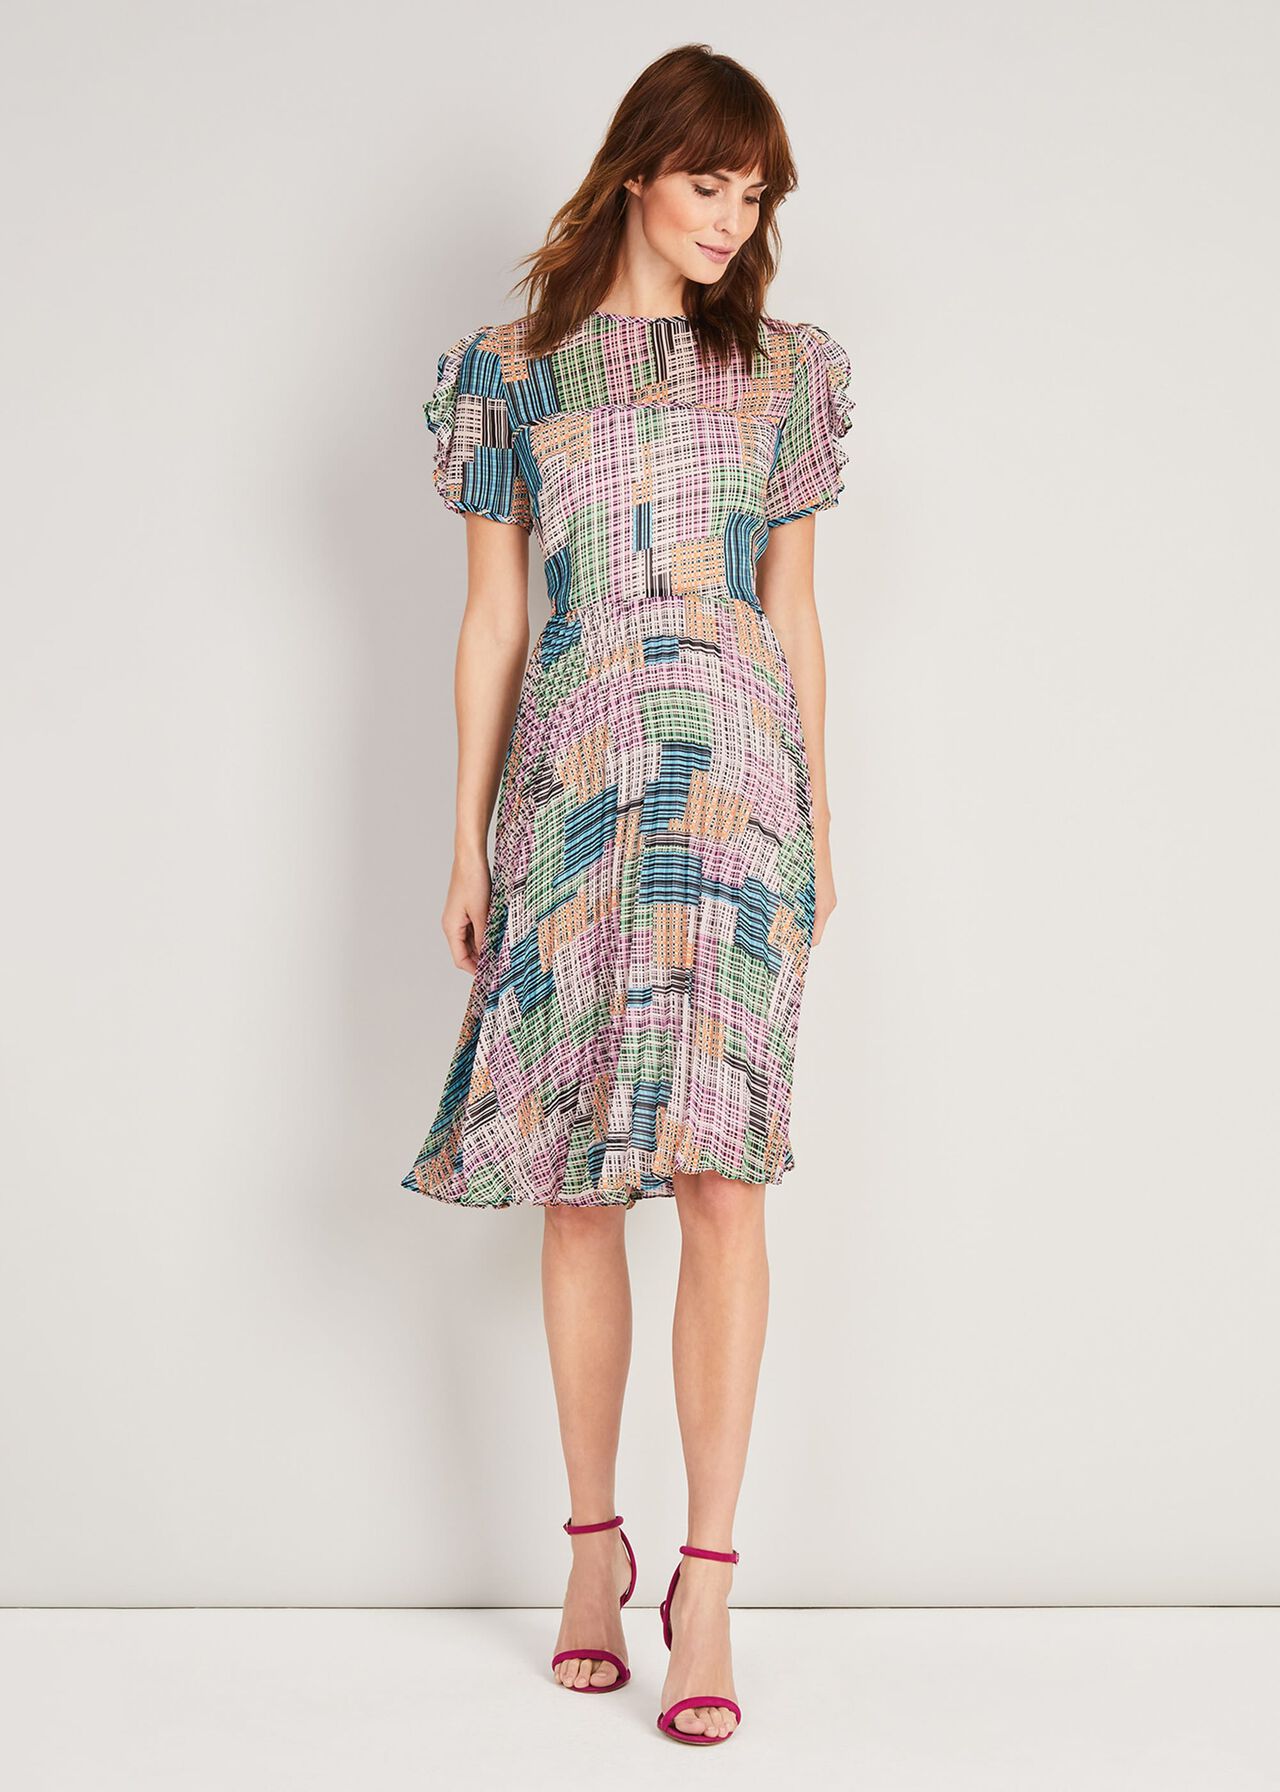 Anatasia Woven Print Dress